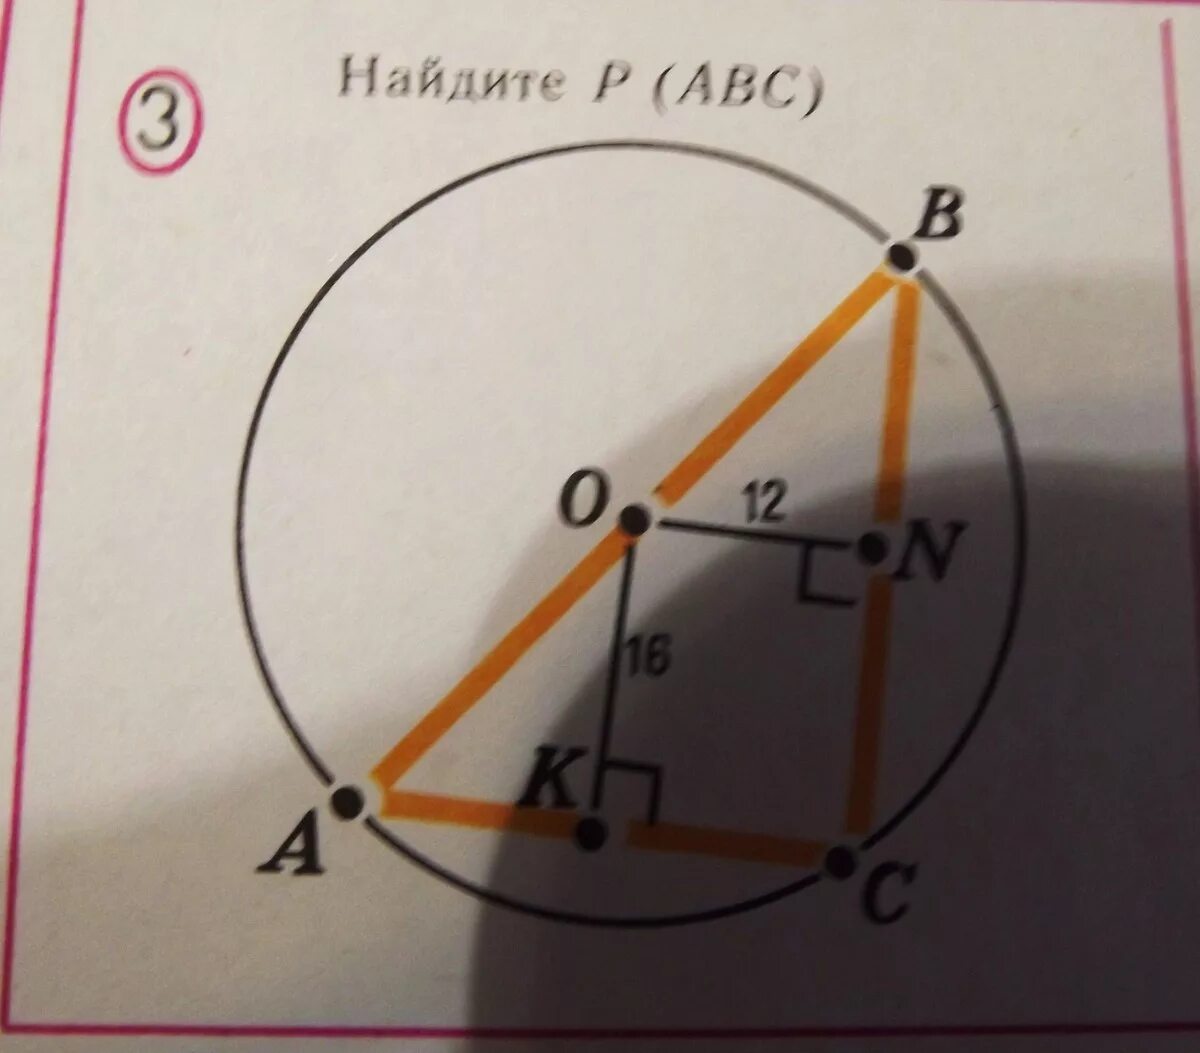 Теорема Пифагора Найдите p ABC. Найти p ABC по теореме Пифагора. Разметка по теореме Пифагора.